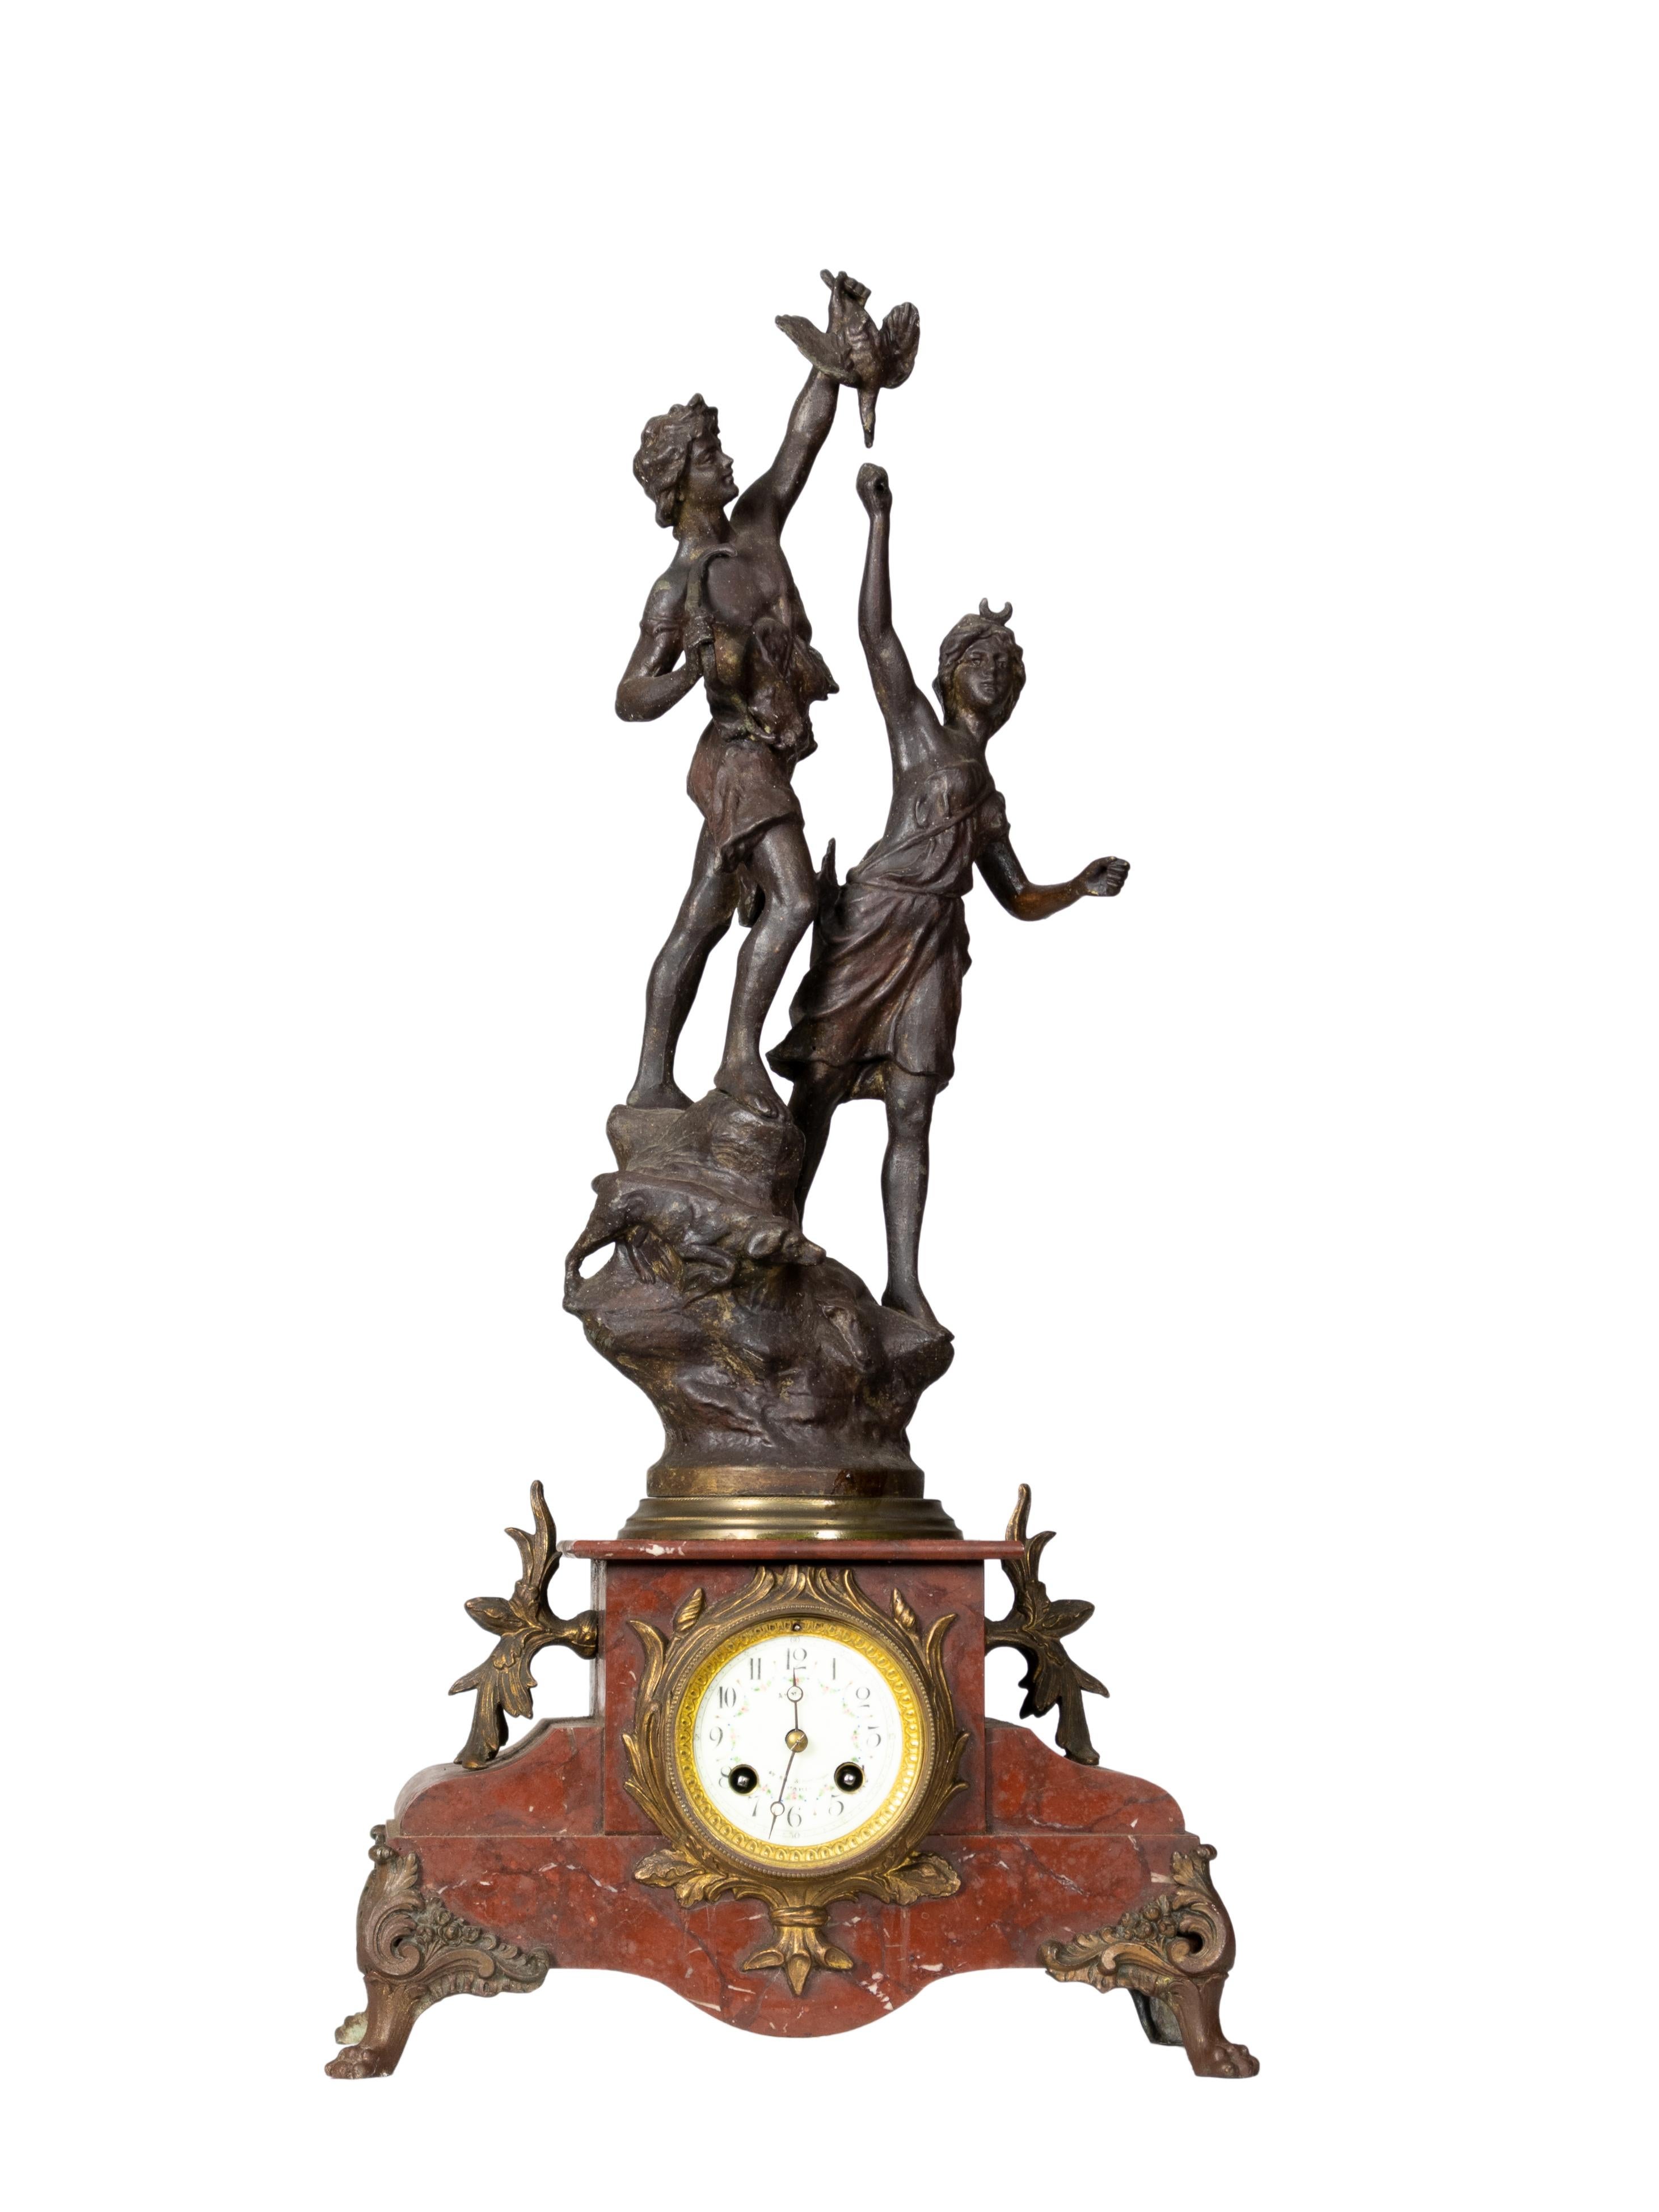 Pendule de cheminée en métal, complète et en état de marche, représentant la déesse romaine Diane chasseresse avec une nymphe à ses côtés, avec des détails en marbre de Carrare et un mécanisme suisse en état de marche. 
Récemment revu par un maître